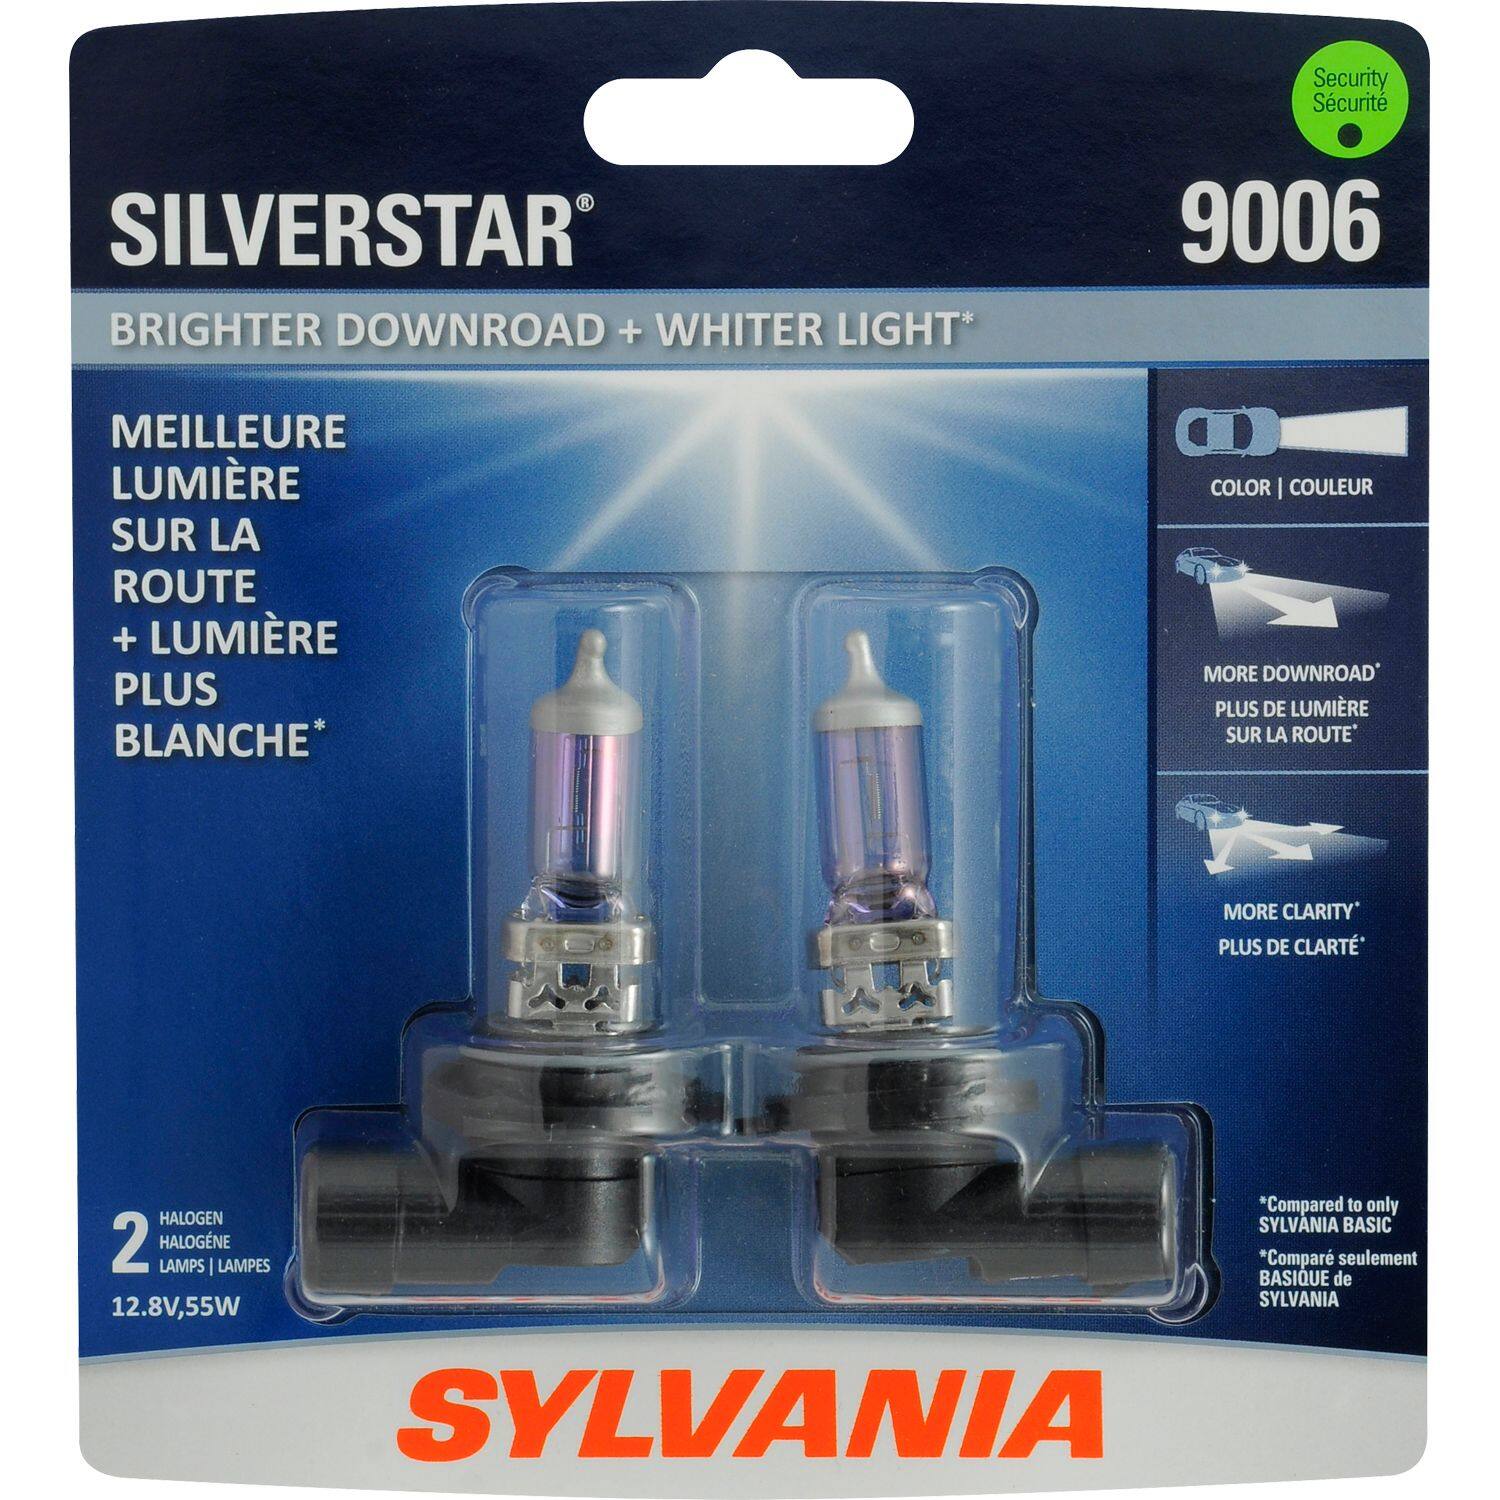 9006 Sylvania SilverStar® Halogen Headlight Bulb, Whiter Light, 2